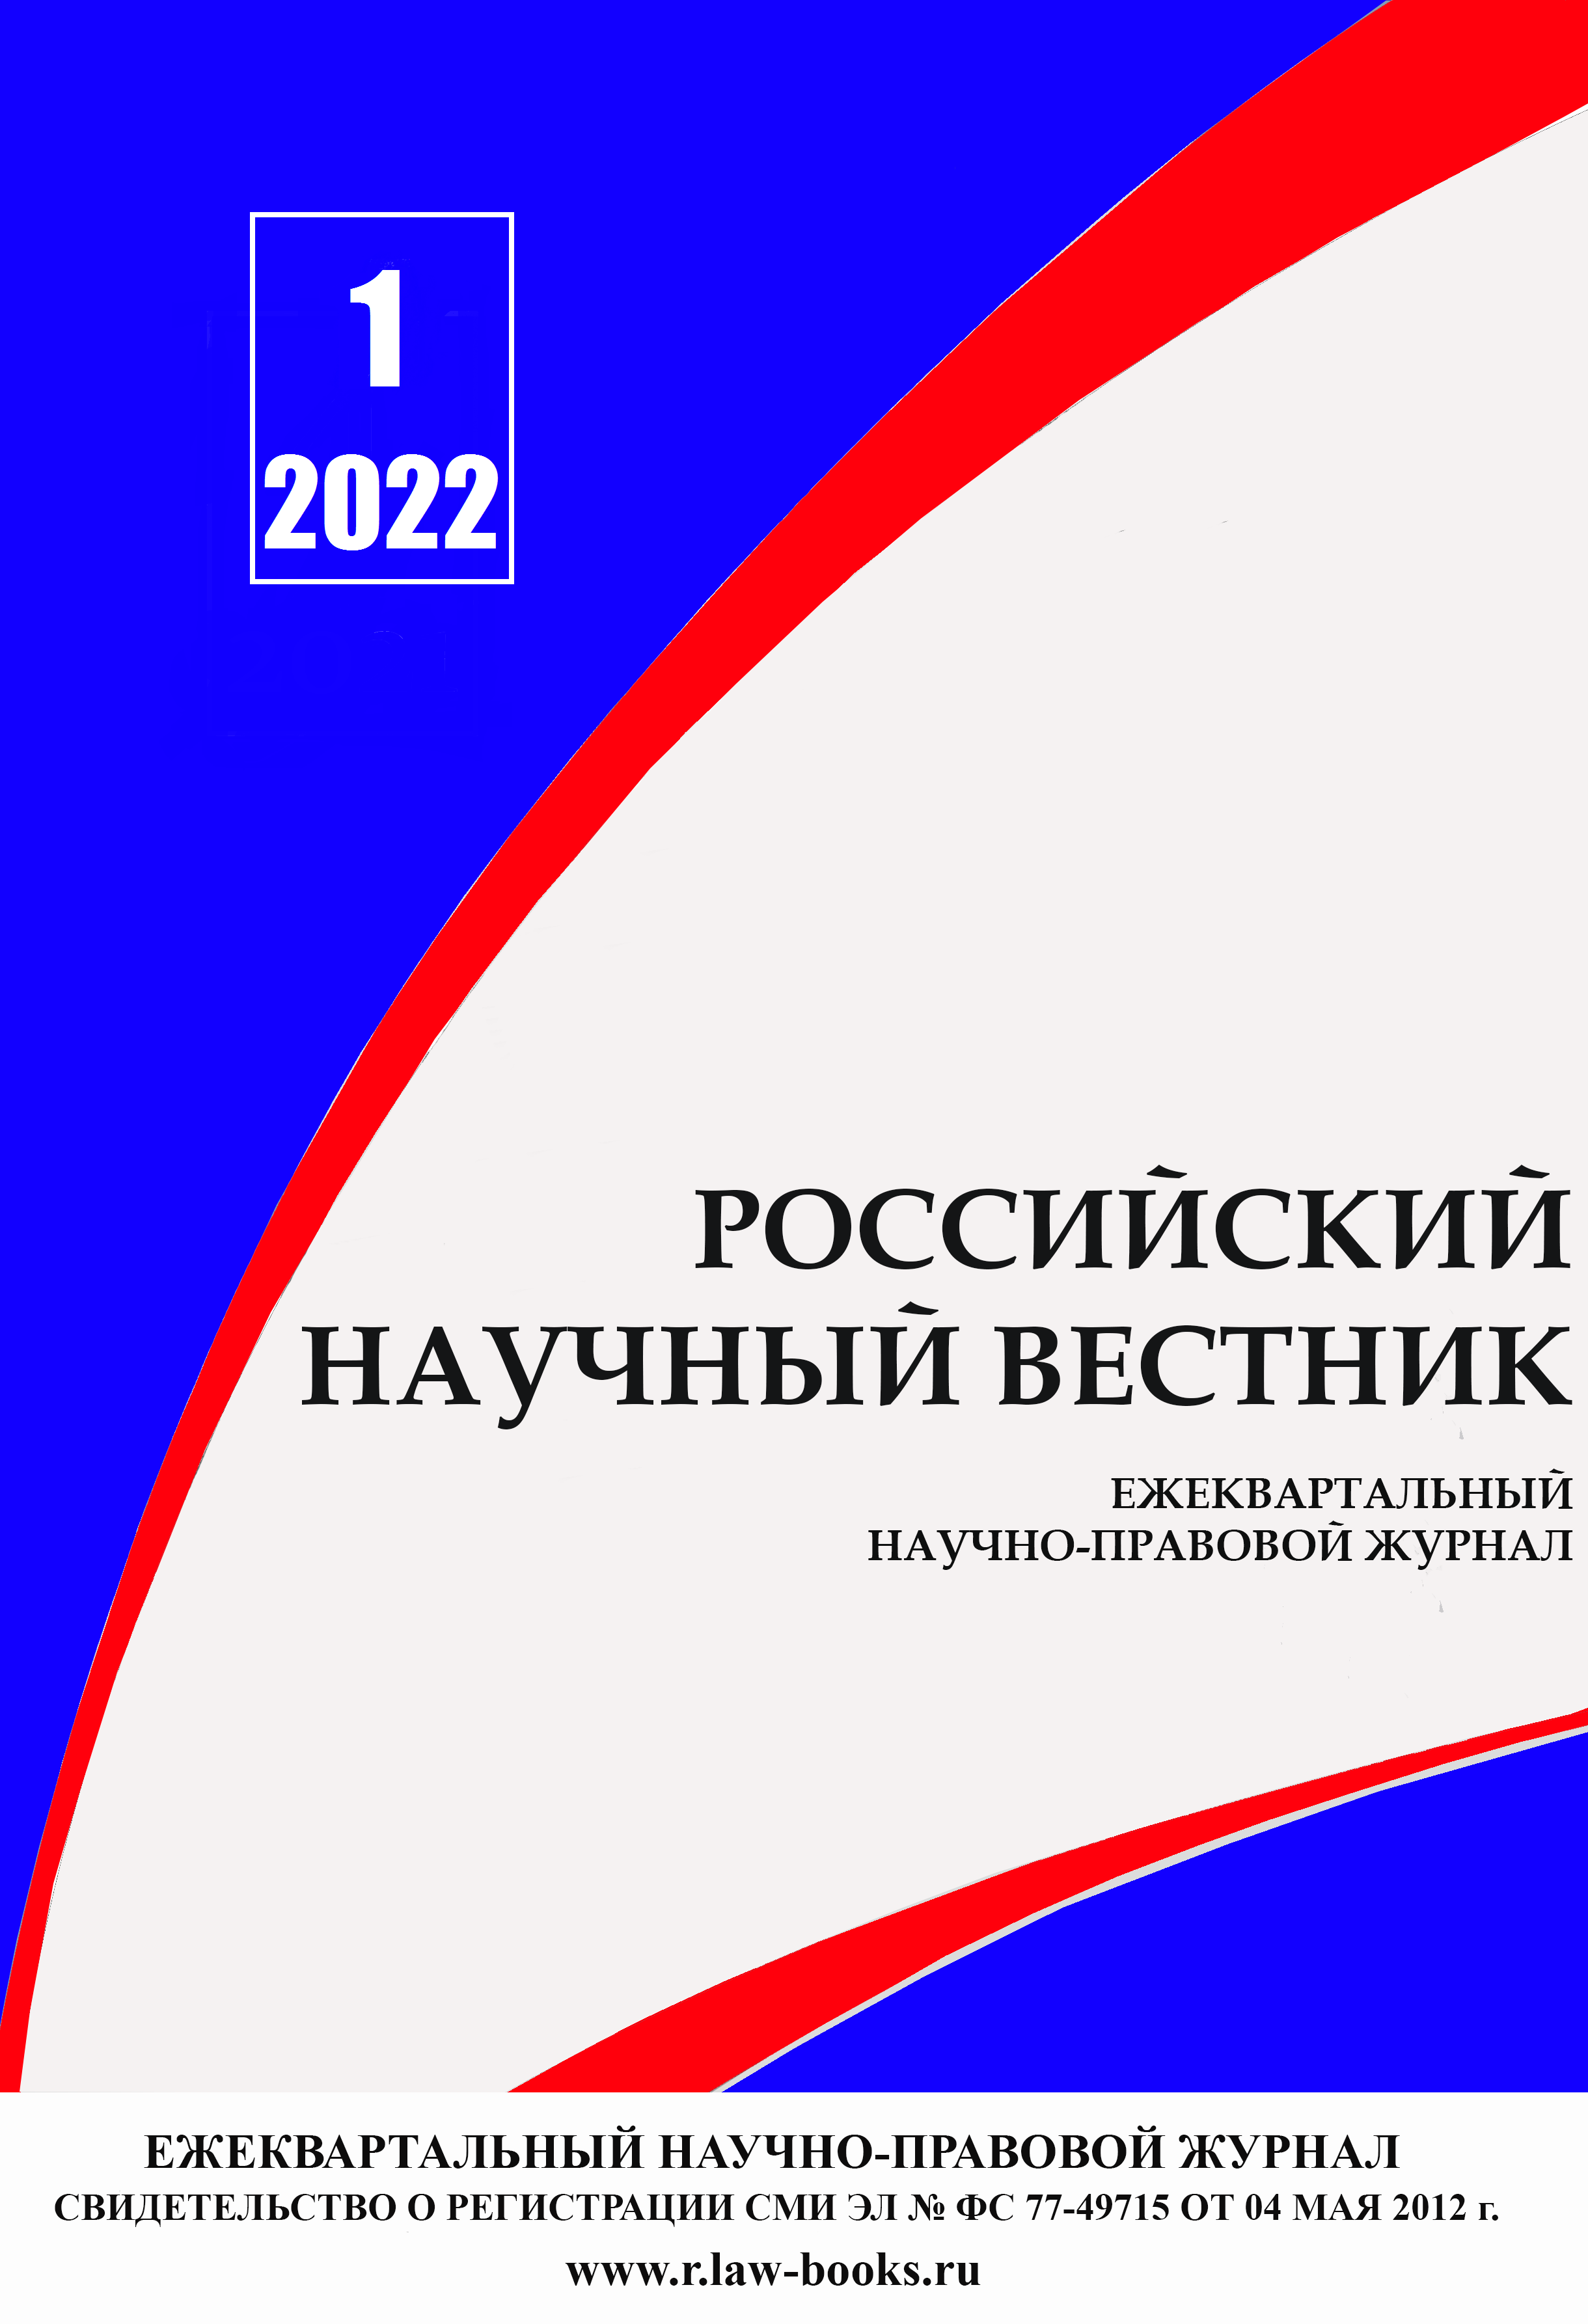 You are currently viewing Российский научный вестник № 1 2022